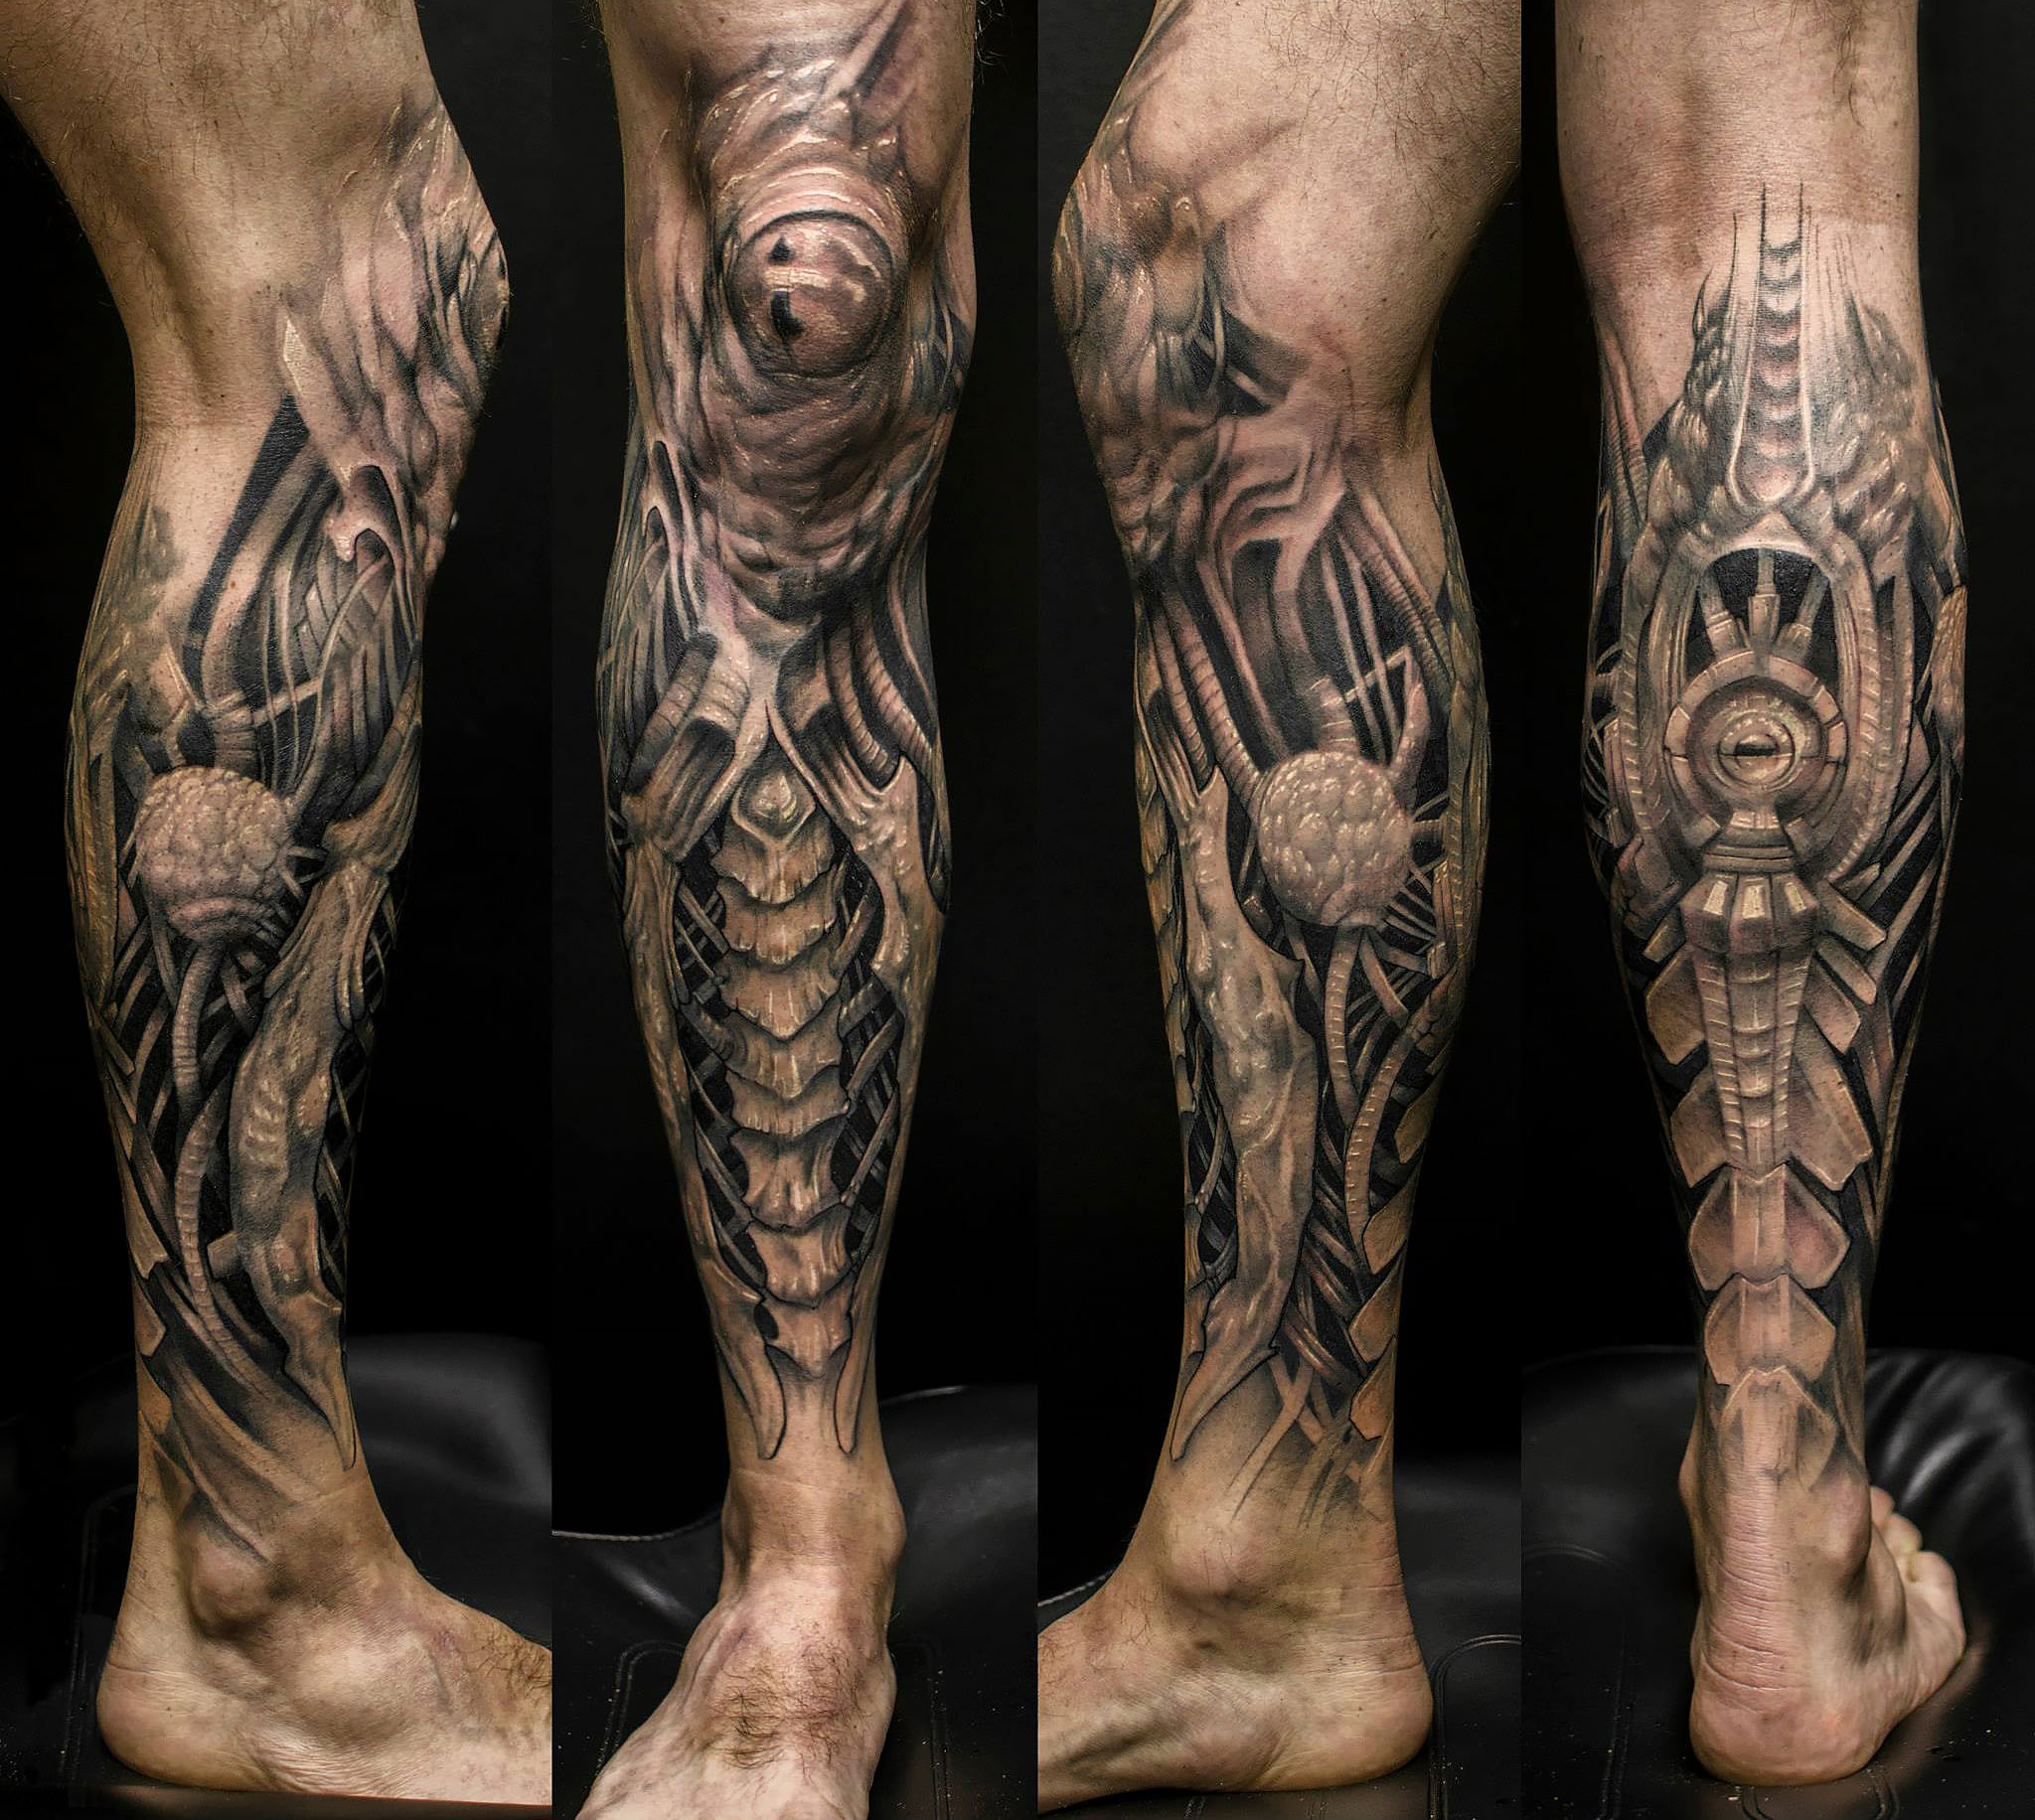 Tattoo artist KLAIM